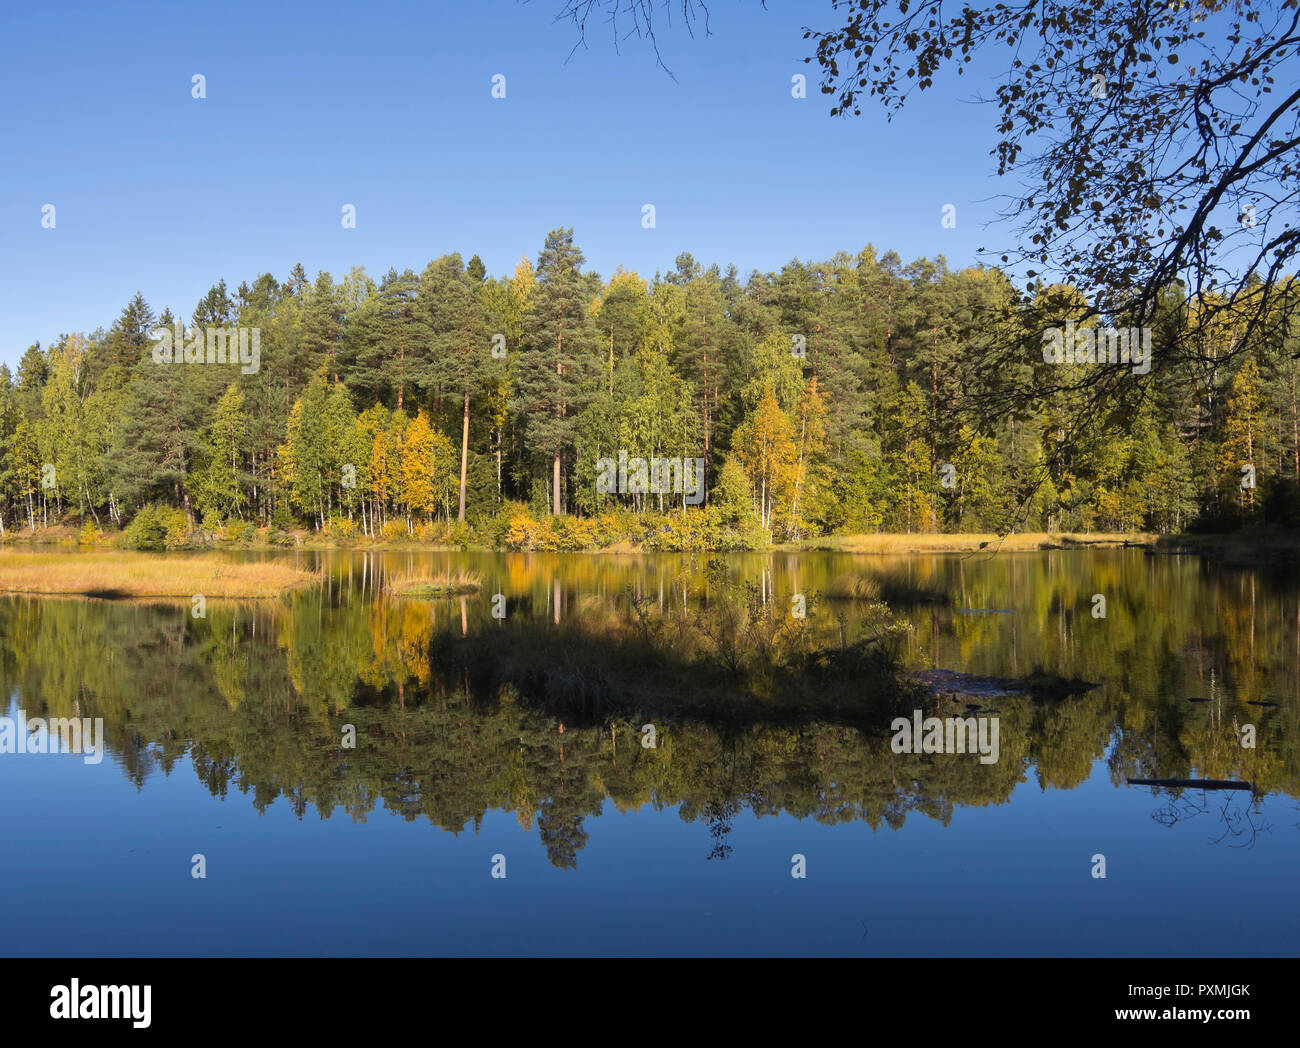 Foreste attorno alla capitale norvegese Oslo hanno incontaminata e vari scenari per tutto l'anno godimento, piccolo lago nel Nordmarka in Autunno colori Foto Stock